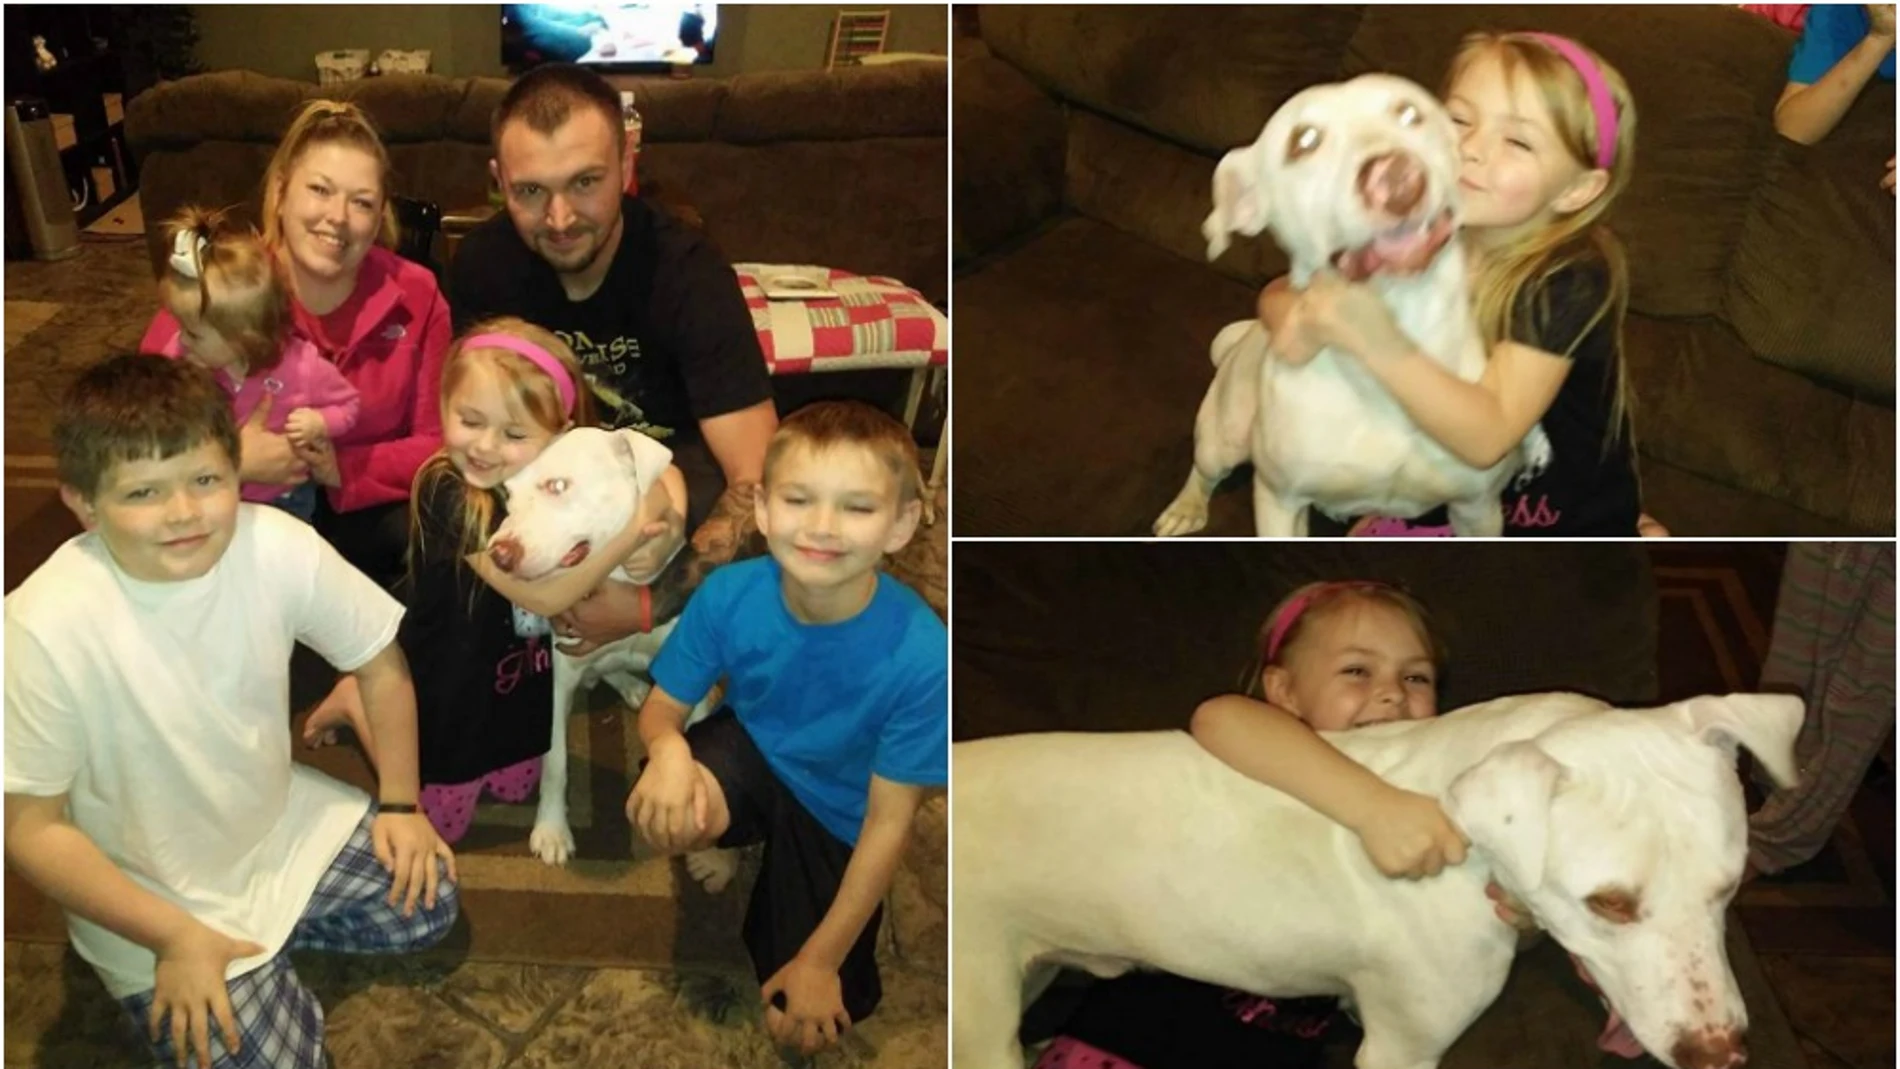 La familia vuelve a sonreír después de encontrar a su perro, que llevaba dos días desaparecido